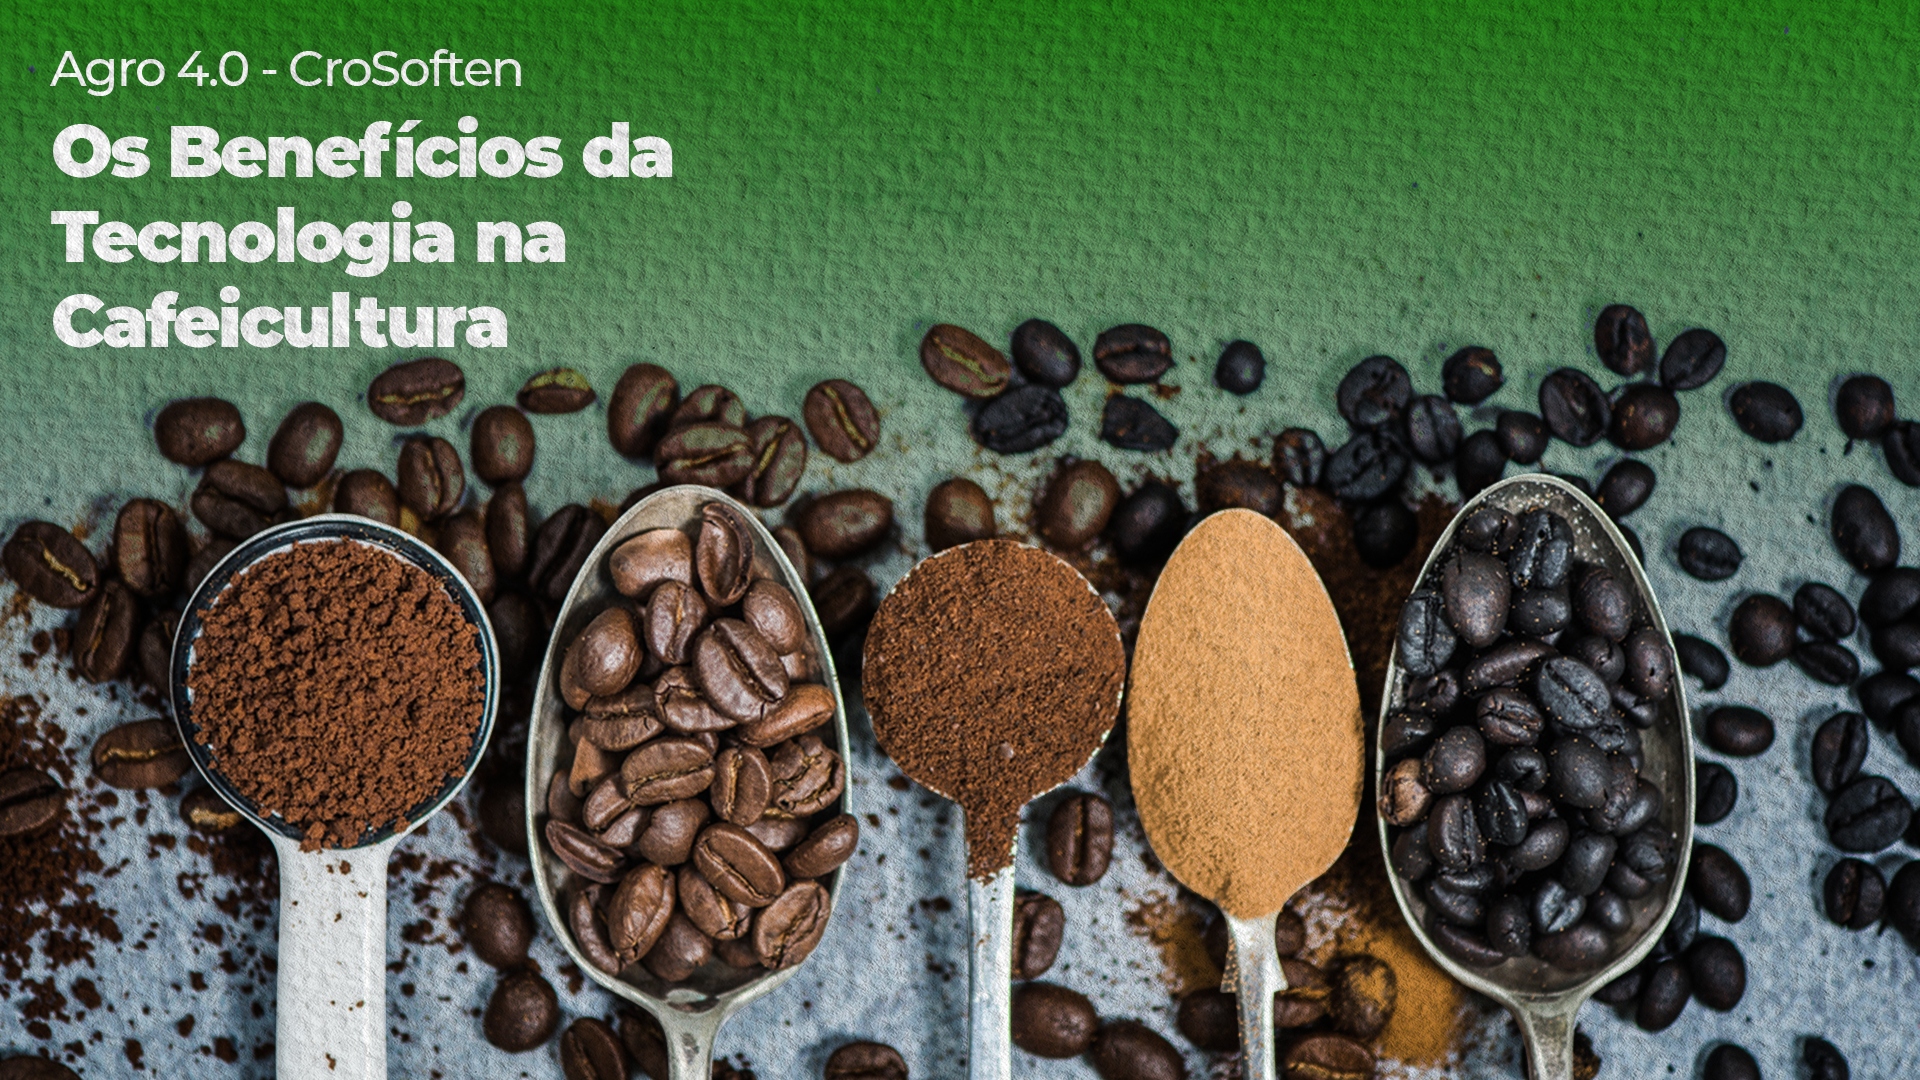 Os benefícios da transformação digital na cafeicultura, impulsiona a evolução da produção de café no Brasil.